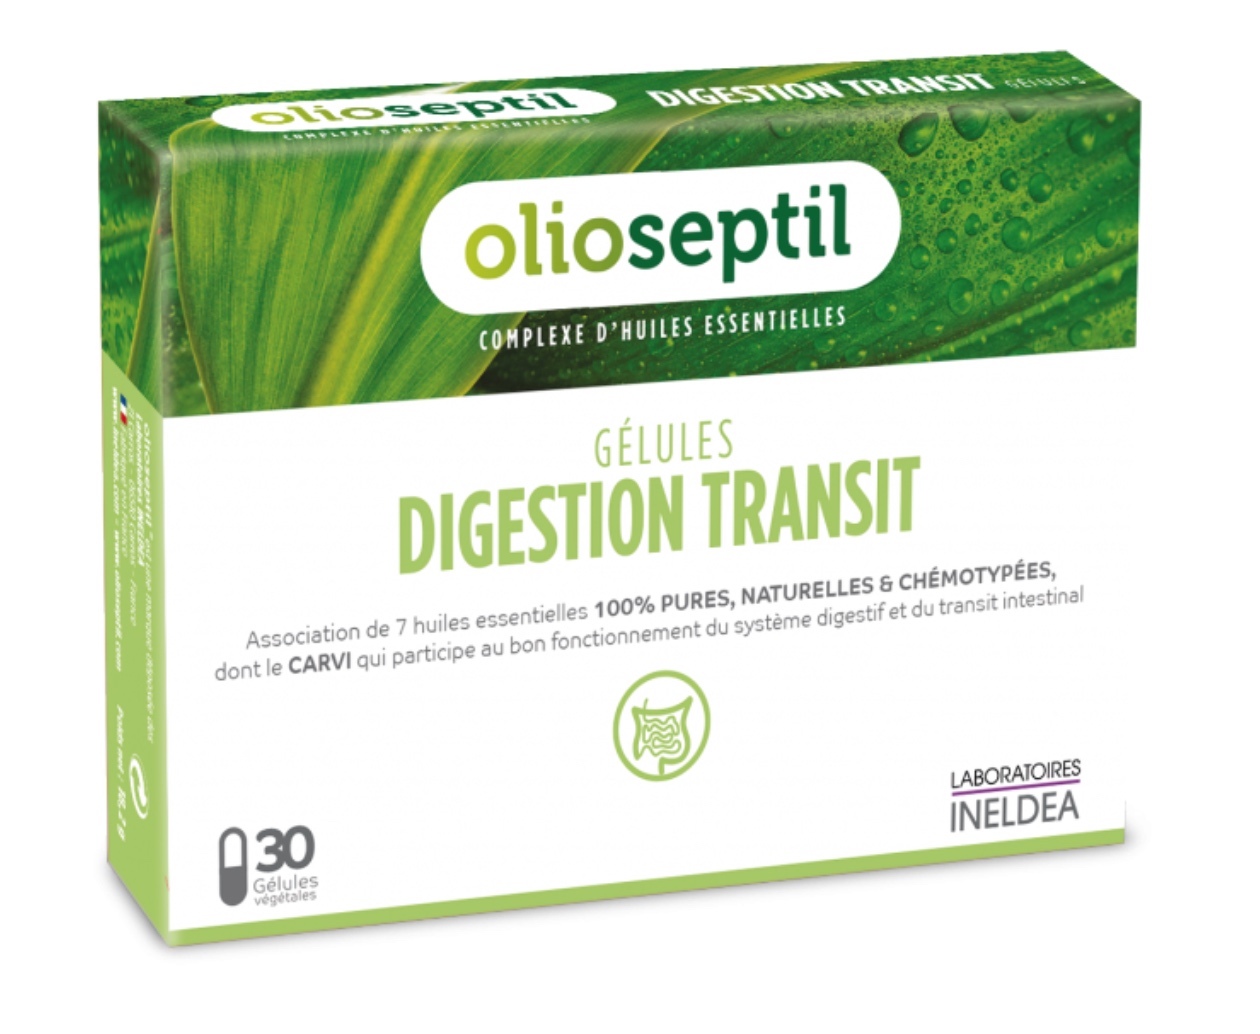 Olioseptil gélules Digestion transit aux huiles essentielles - 30 gélules